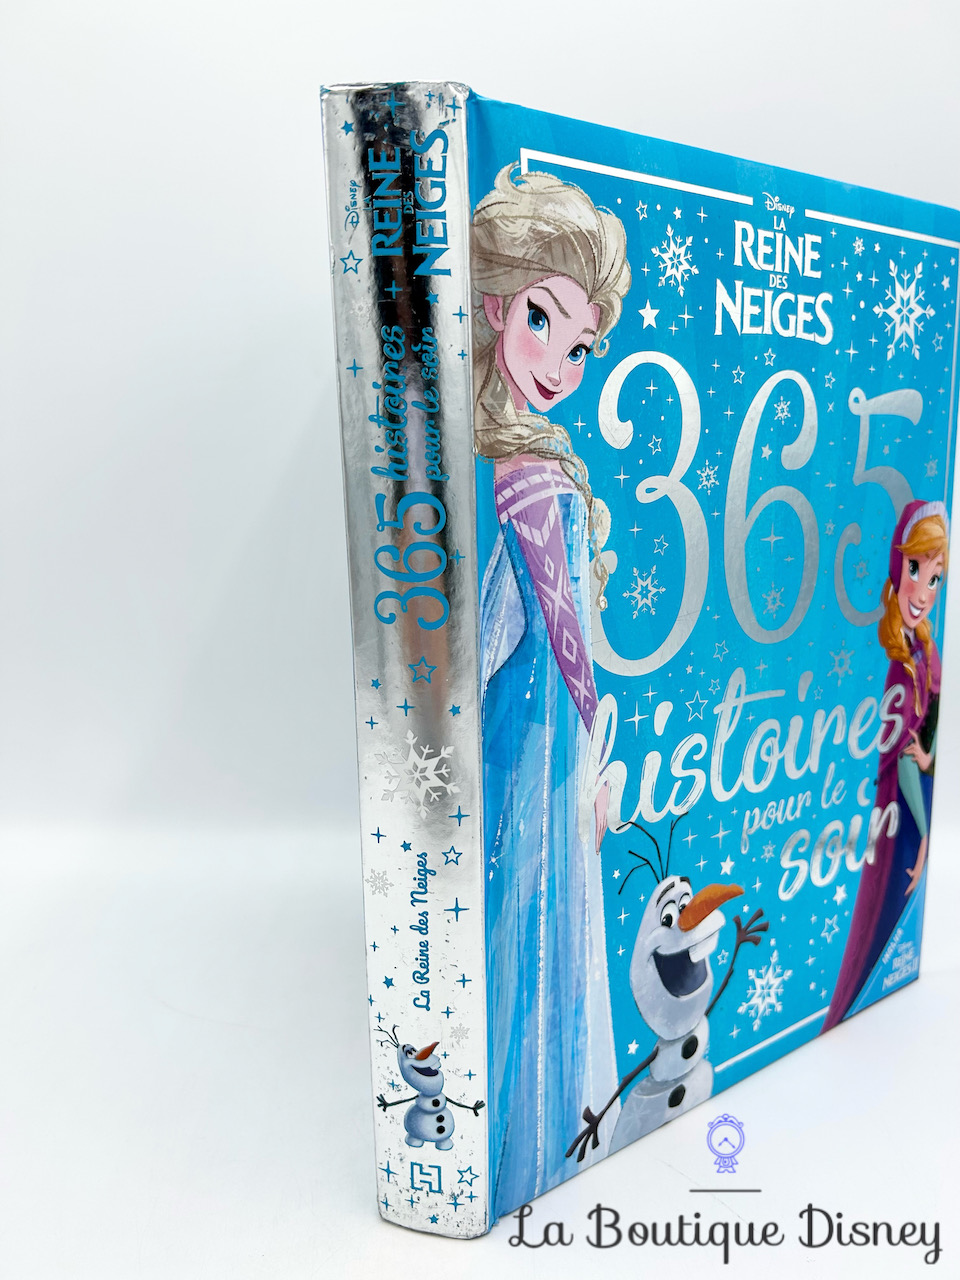 livre-365-histoires-pour-le-soir-la-reine-des-neiges-disney-hachette-1